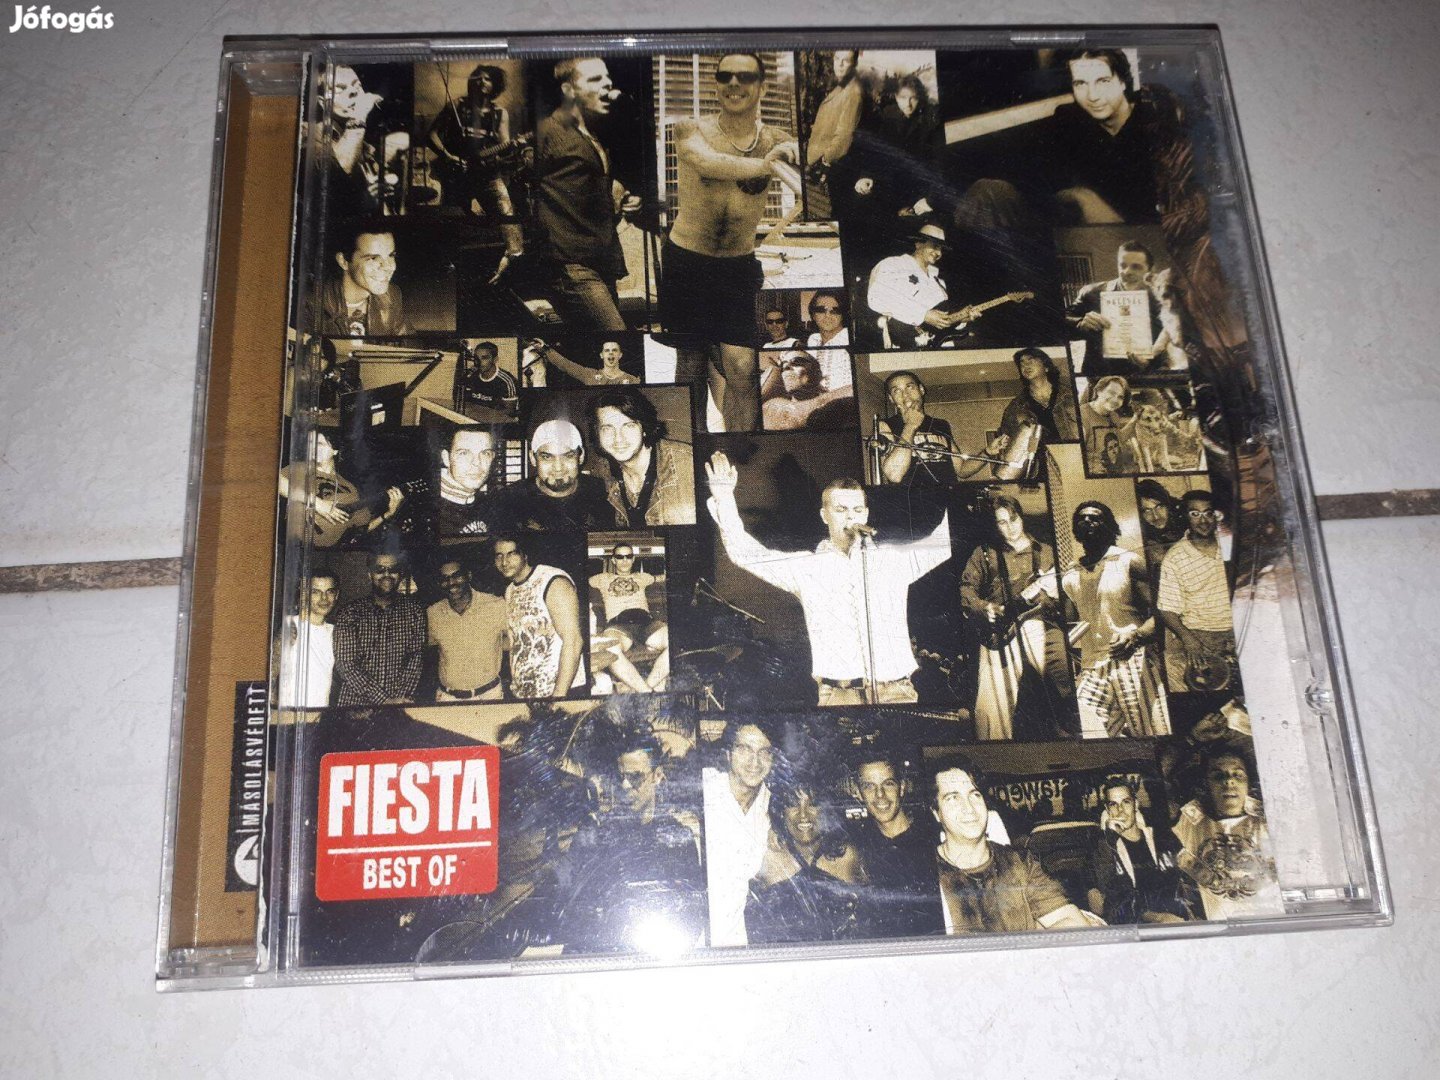 Fiesta - Best of műsoros CD